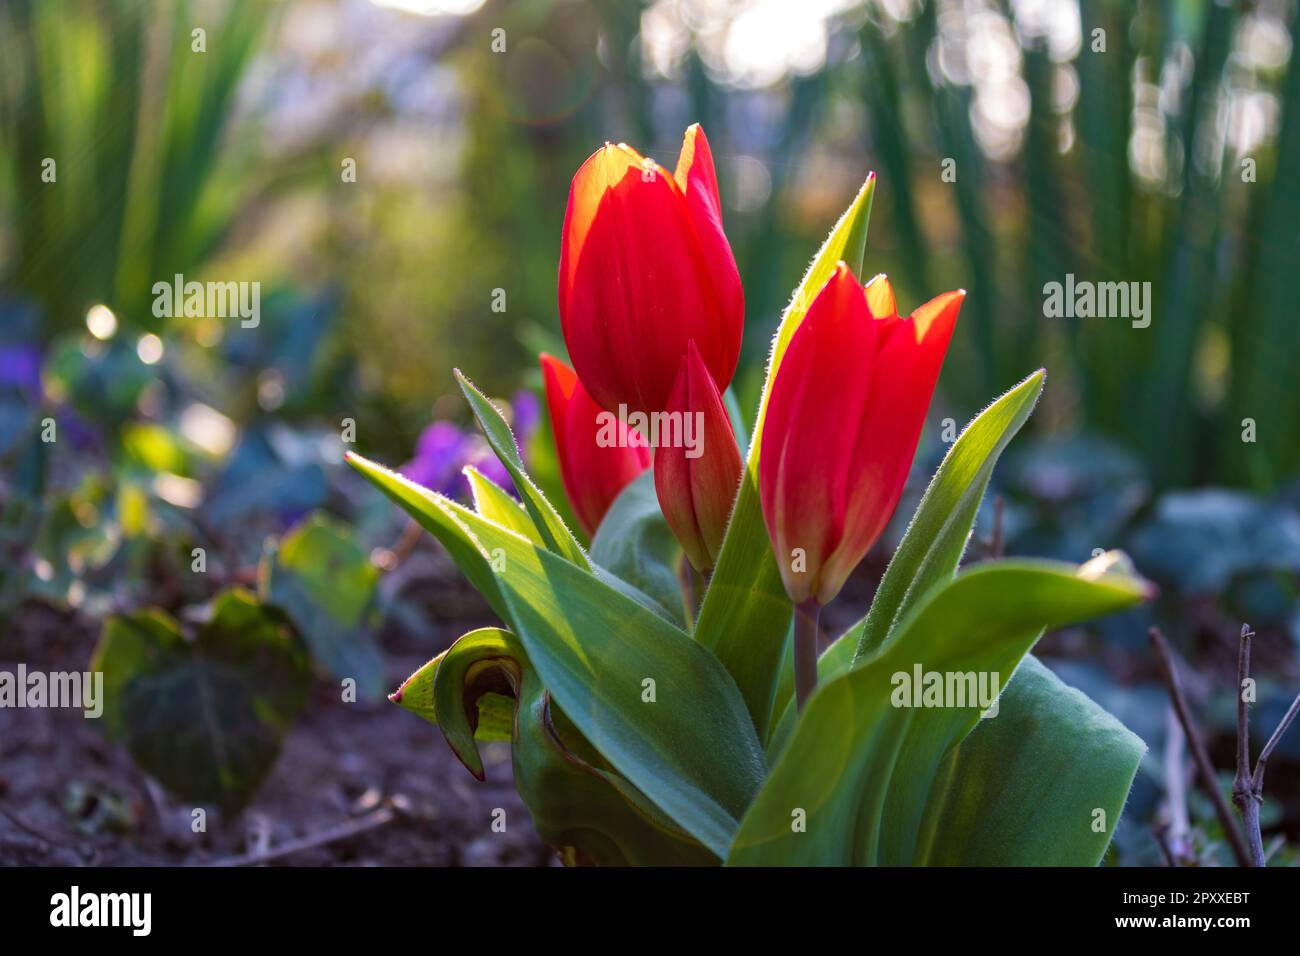 Il tulipano rosso (Tulipa) fiorisce alla luce del sole all'inizio della primavera in Germania, primo piano e focalizzazione selettiva con riflessi lenti Foto Stock